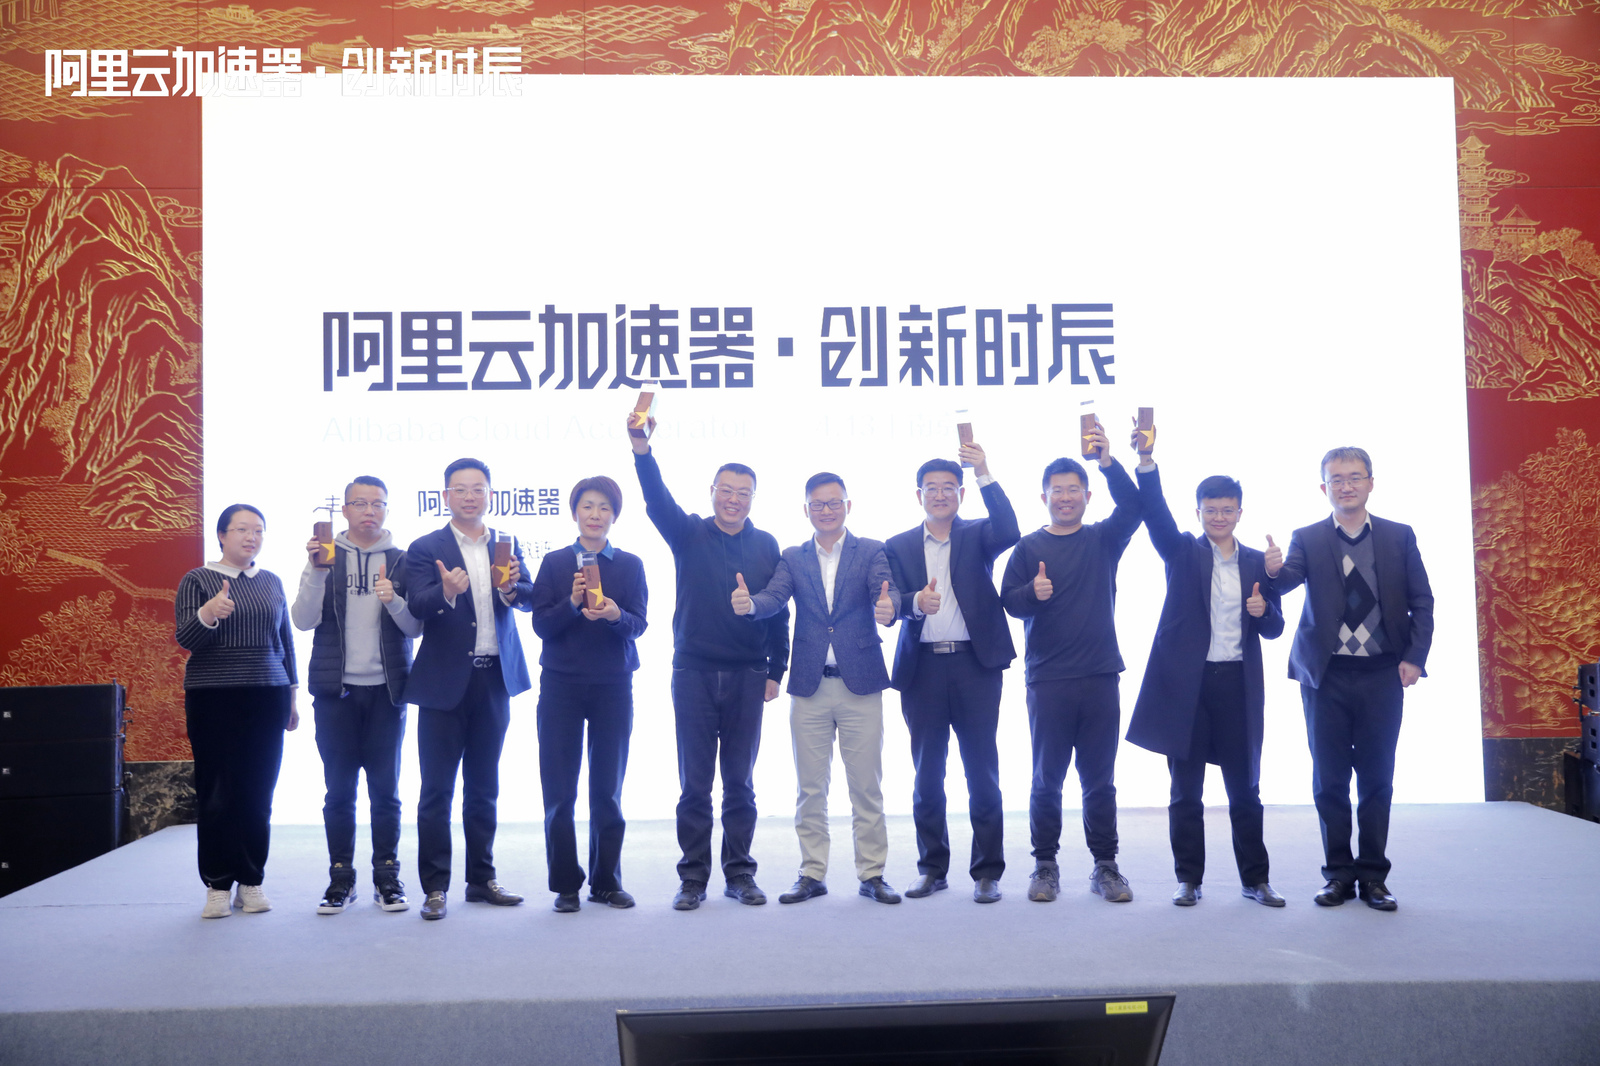 阿里云加速器创新时辰南京站闭幕　迎接未来产业数字化转型新机遇